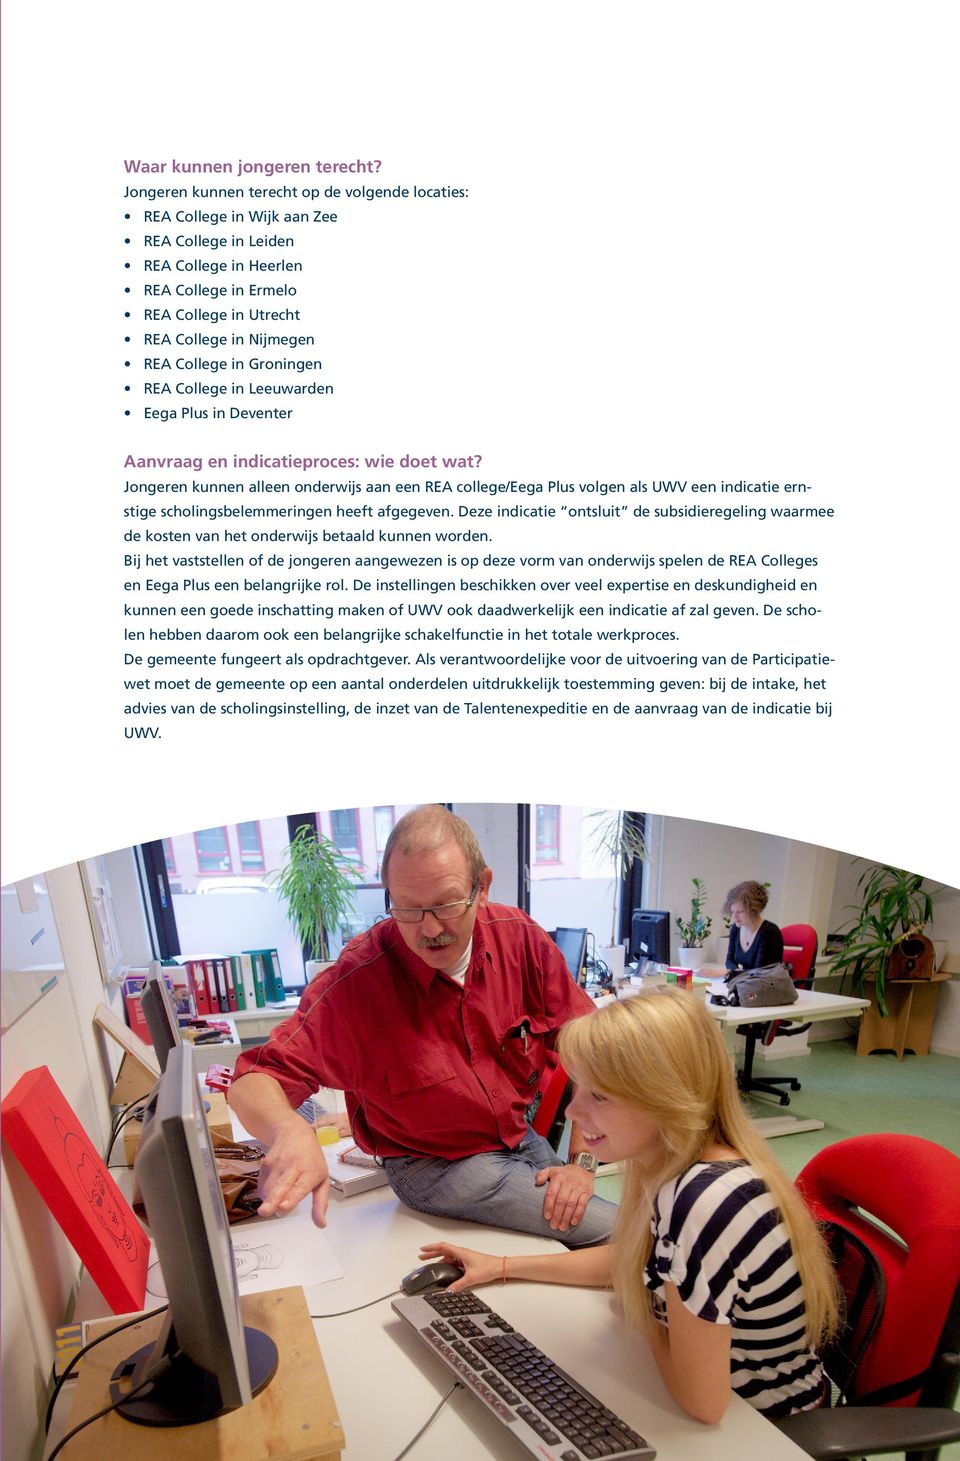 College in Groningen REA College in Leeuwarden Eega Plus in Deventer Aanvraag en indicatieproces: wie doet wat?